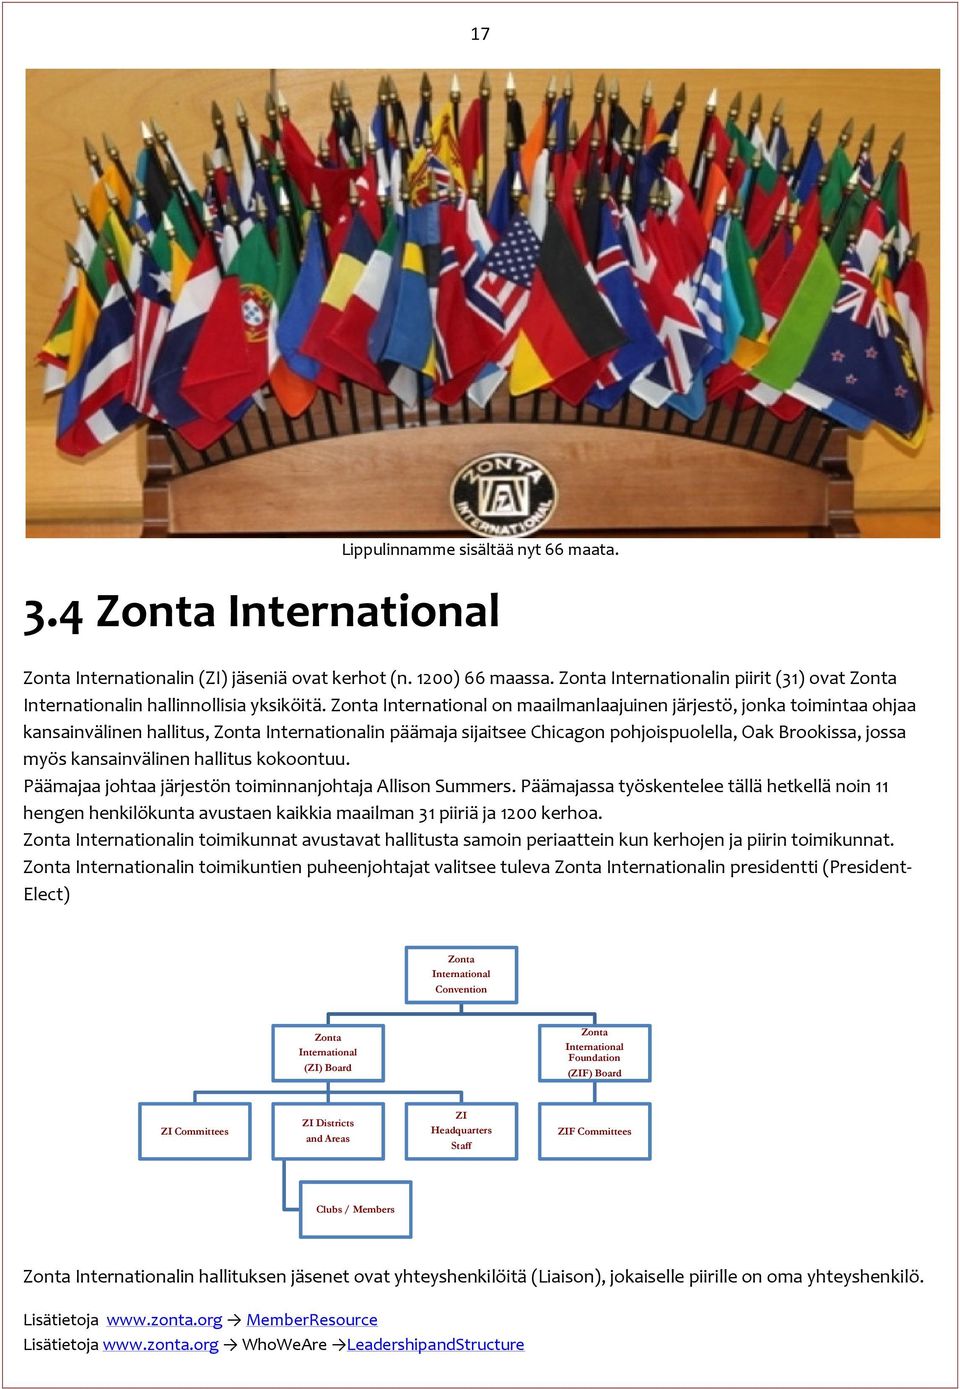 Zonta International on maailmanlaajuinen järjestö, jonka toimintaa ohjaa kansainvälinen hallitus, Zonta Internationalin päämaja sijaitsee Chicagon pohjoispuolella, Oak Brookissa, jossa myös